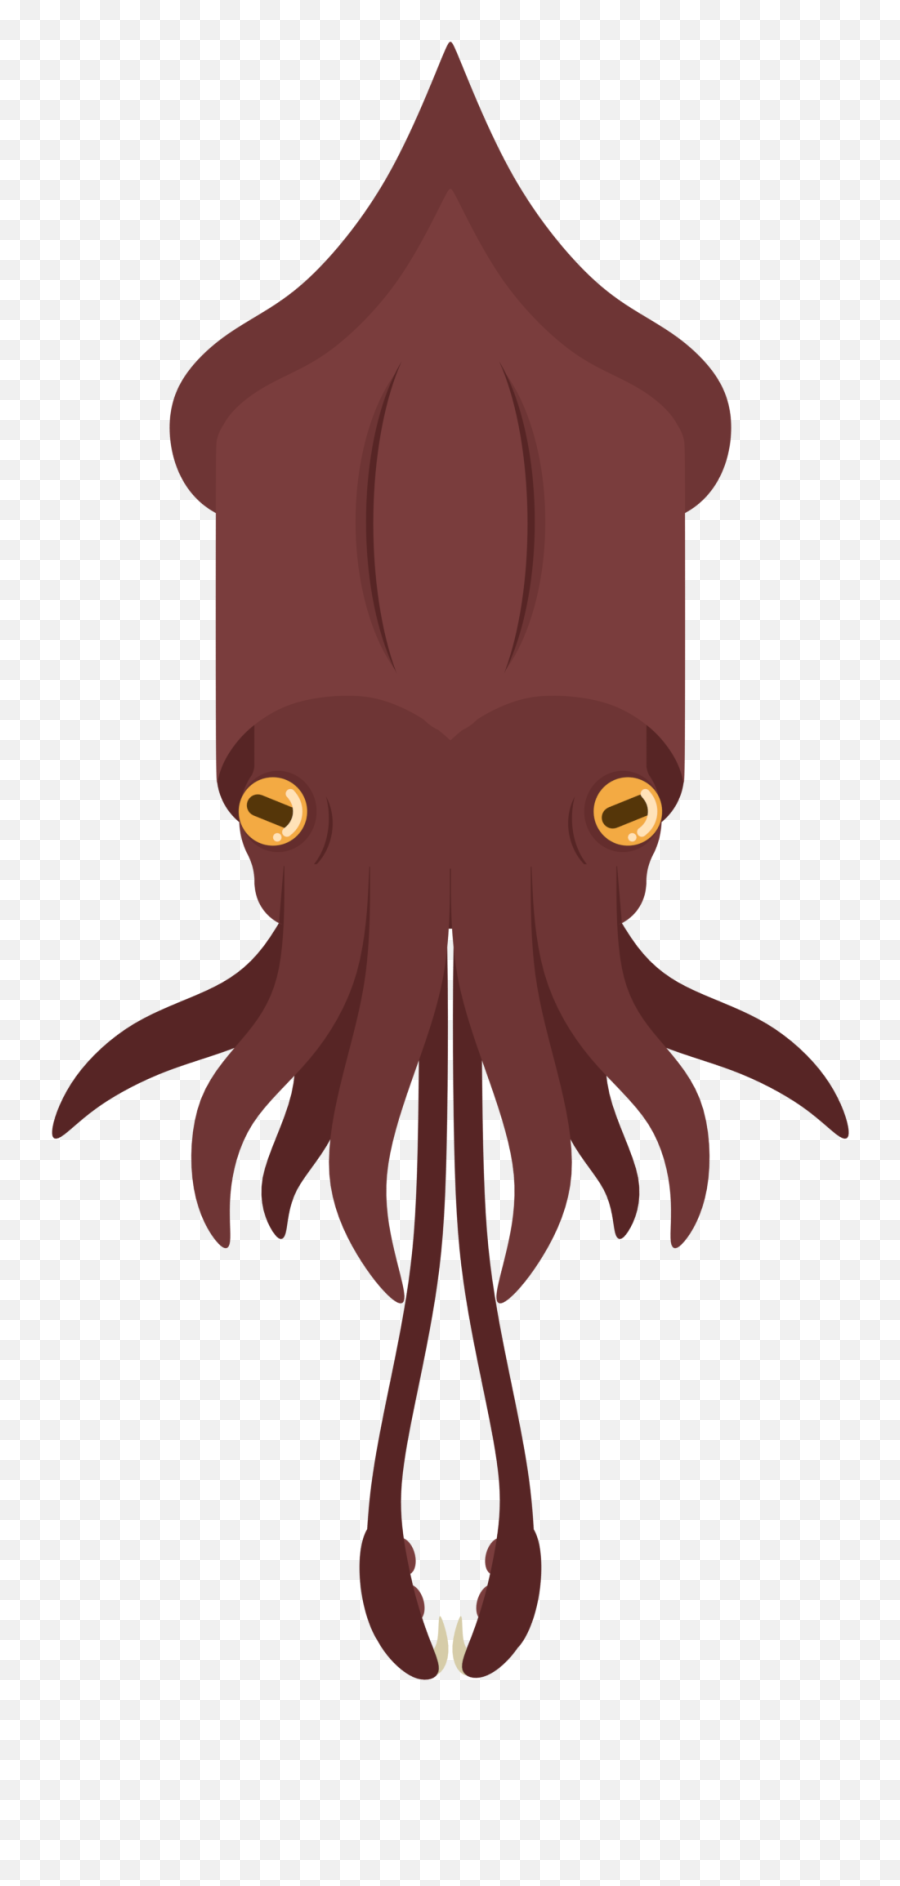 Animalanimal - Common Octopus Emoji,Squid Clipart